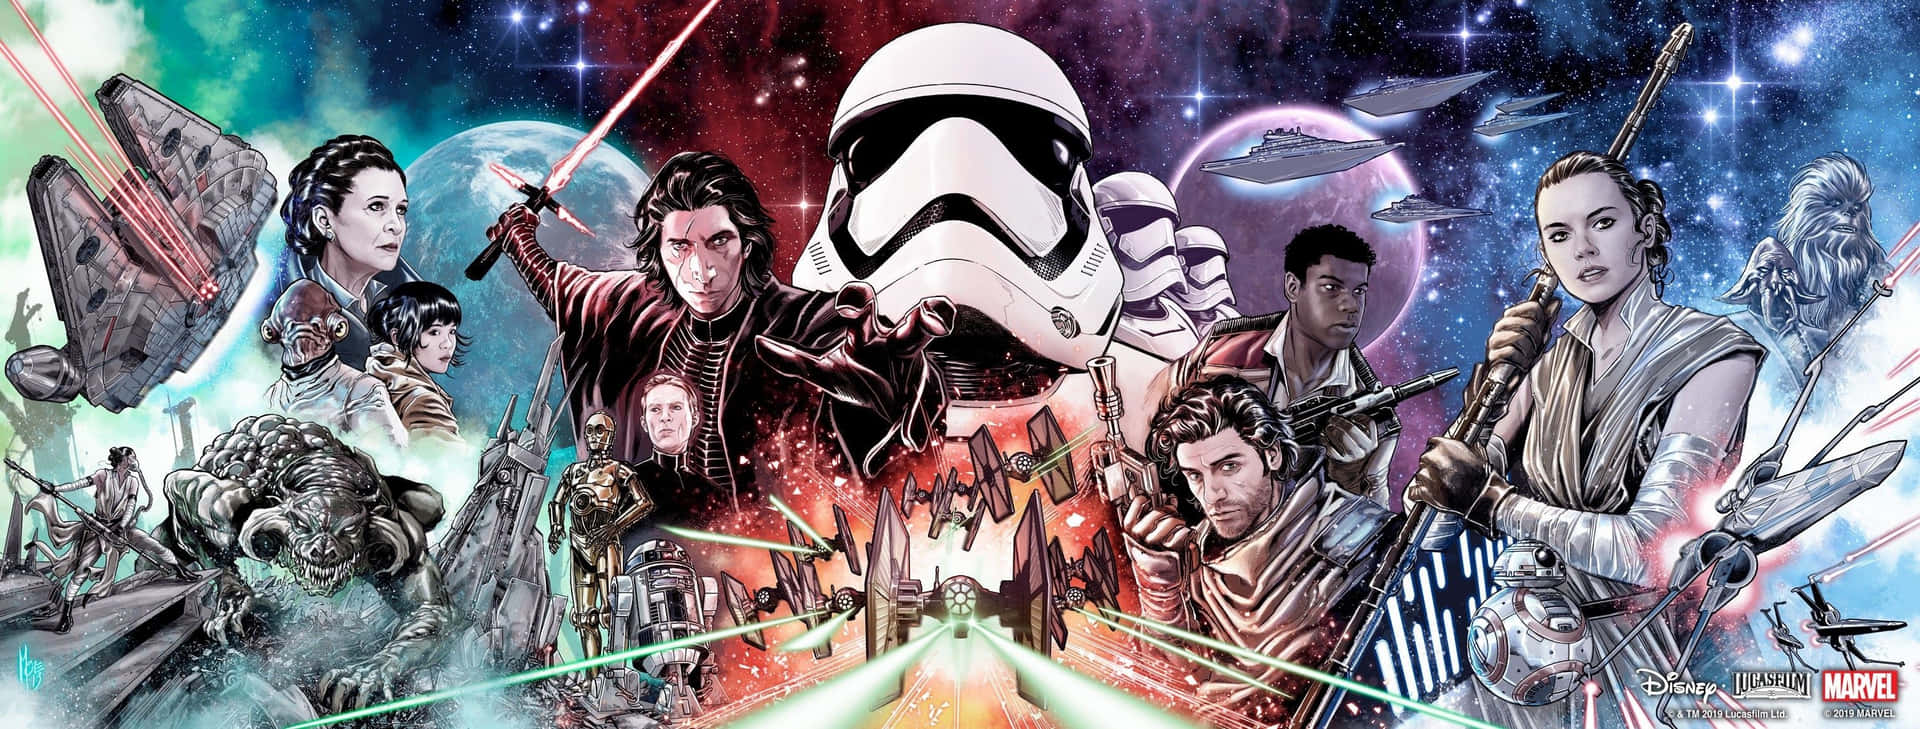 Star Wars-karaktärer Wallpaper